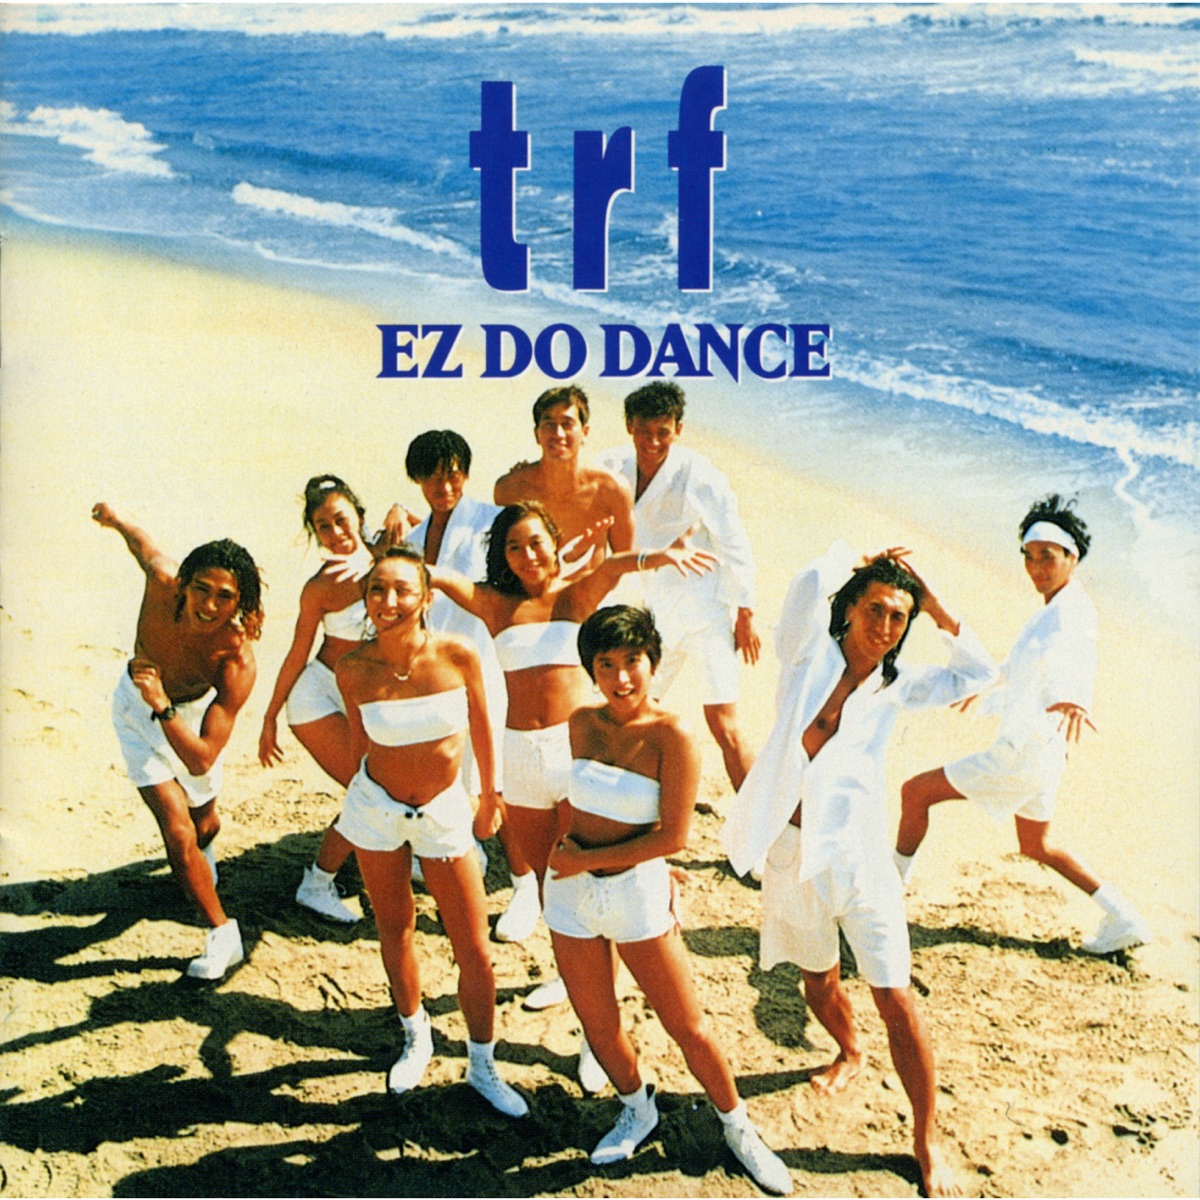 TRF EZ DO DANCE cover artwork